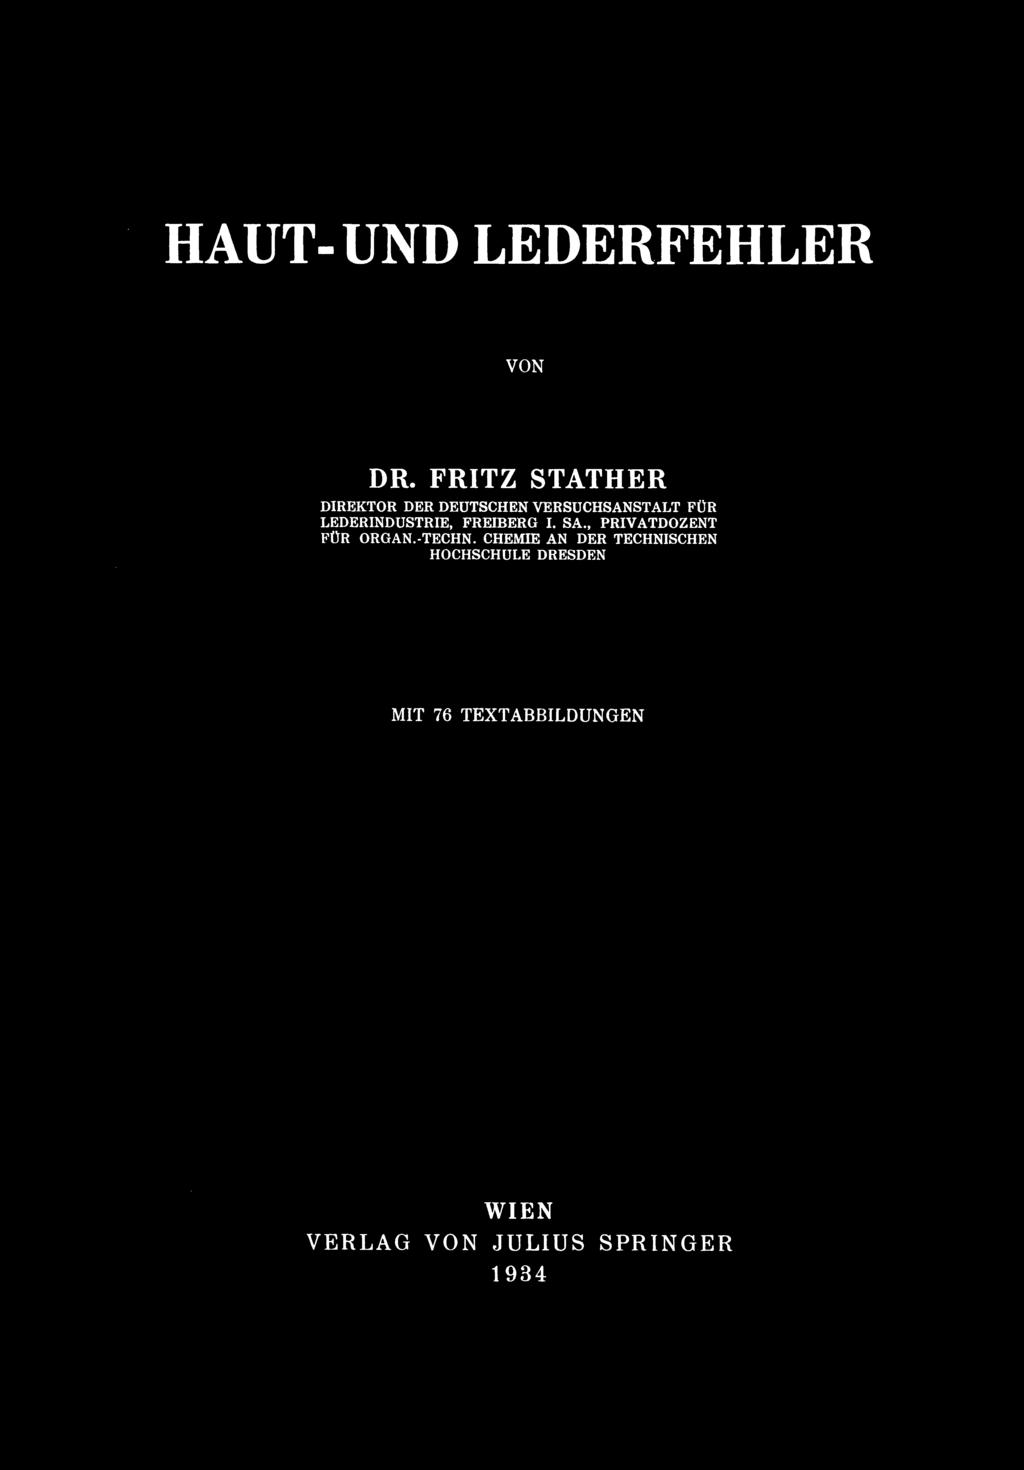 HAUT- UND LEDERFEHLER VON DR.